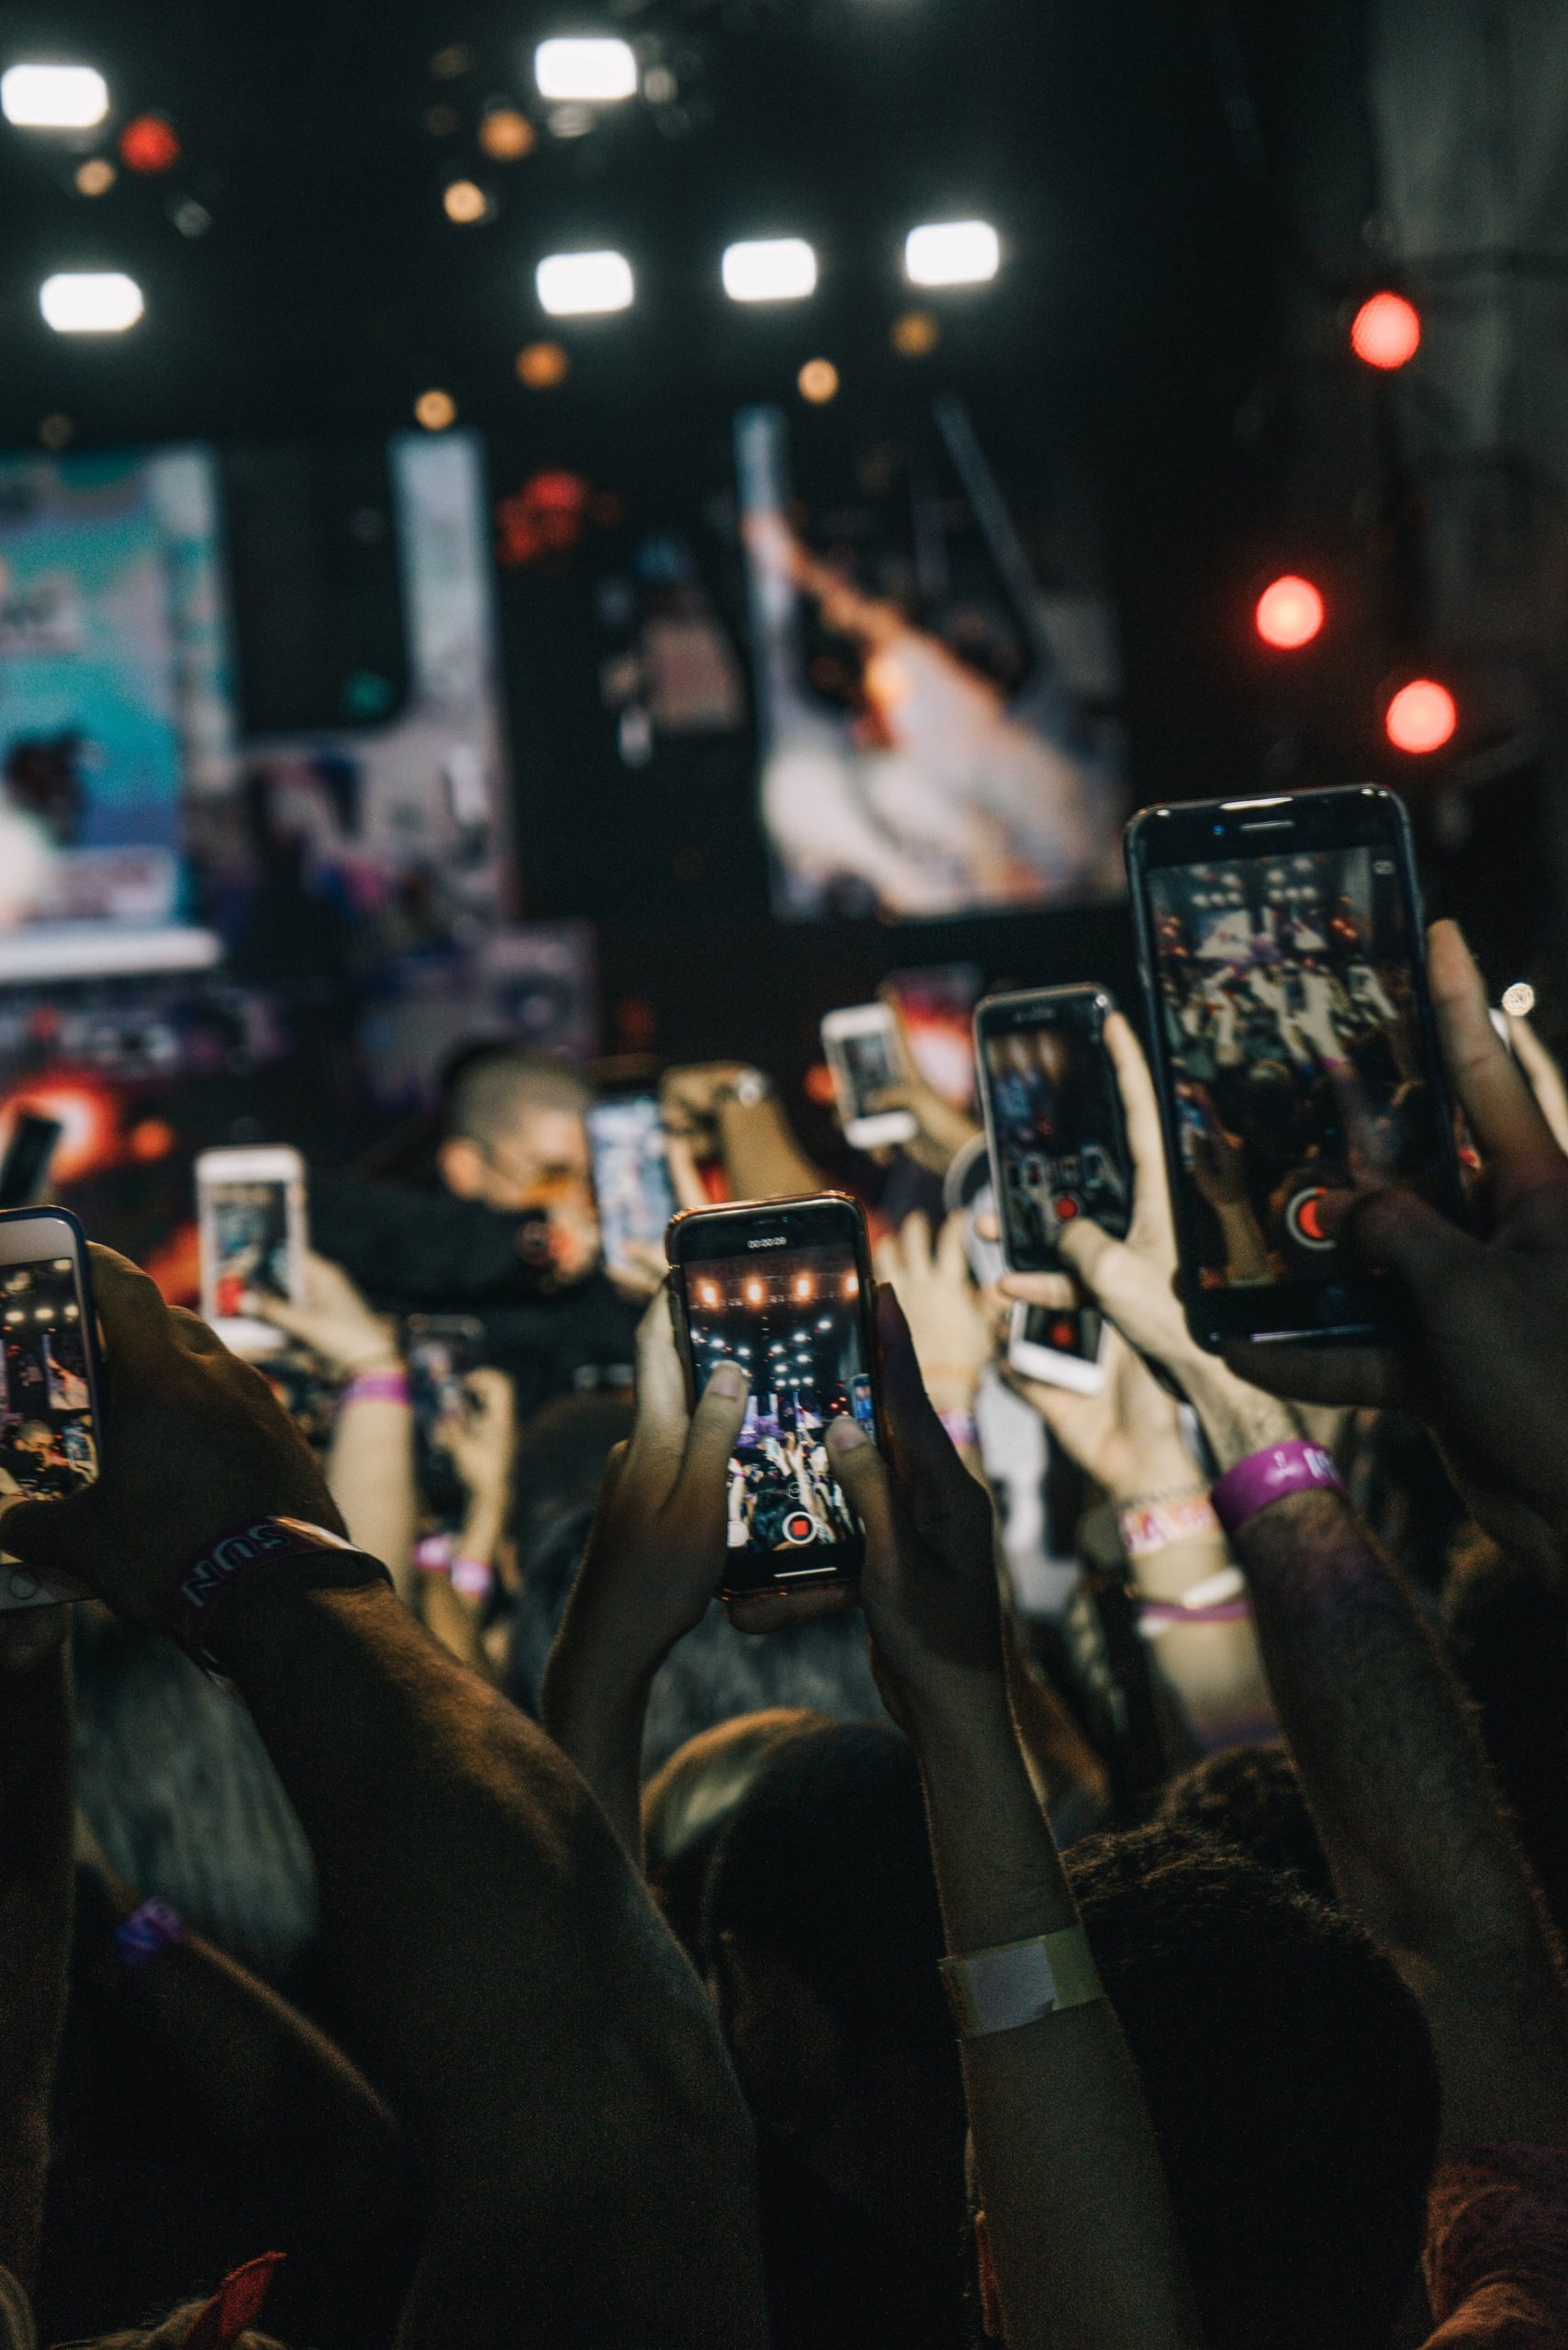 Alcuni smartphone alzati durante un concerto